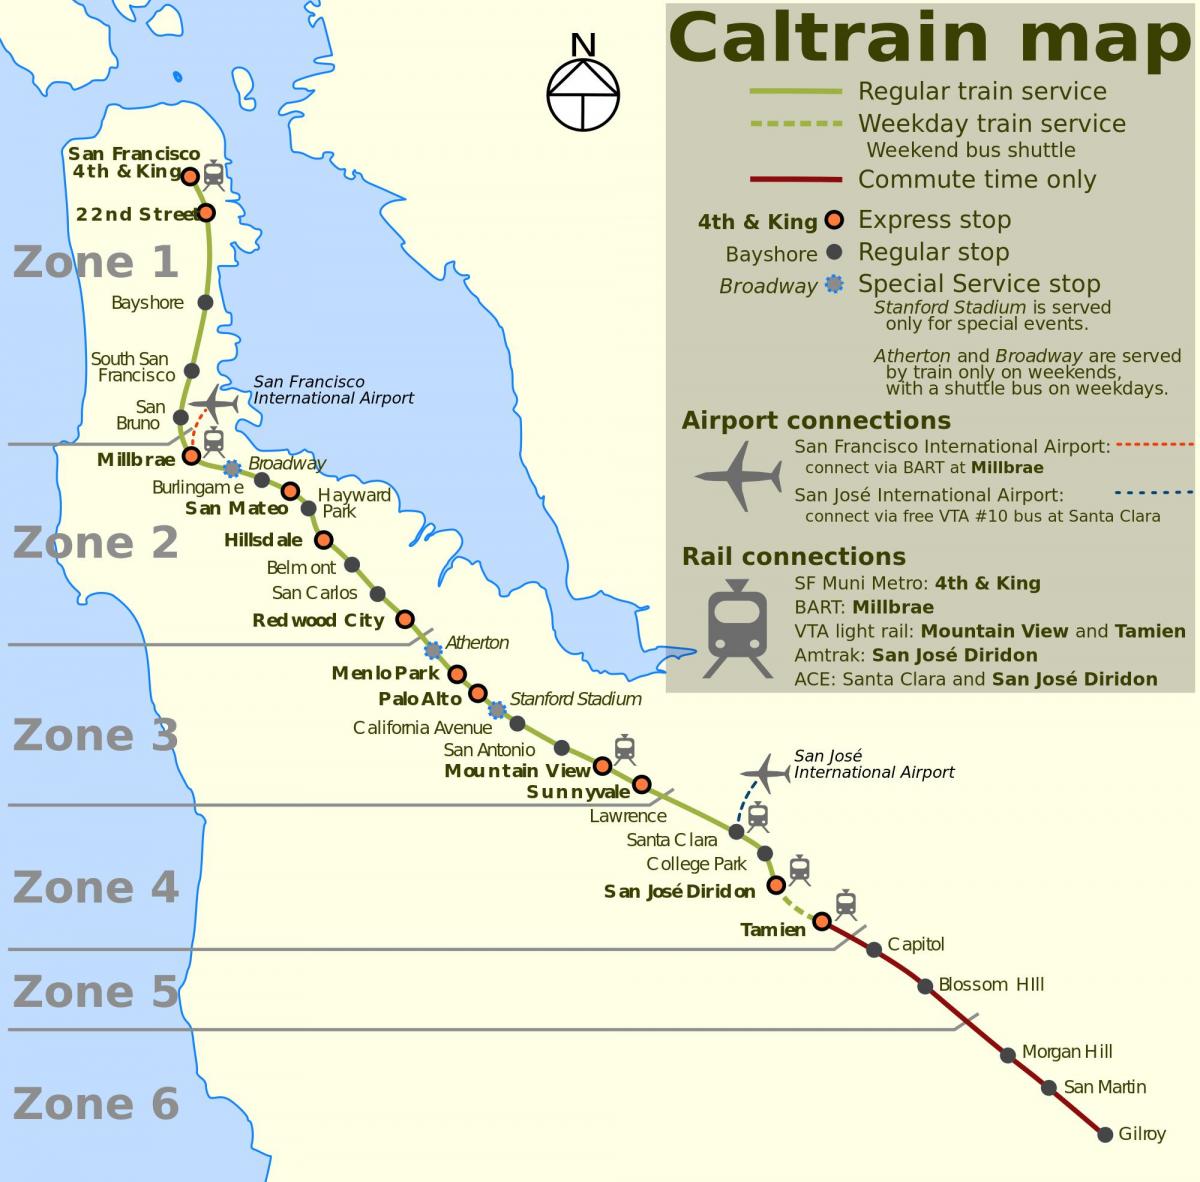 San Francisco caltrain zemljevid